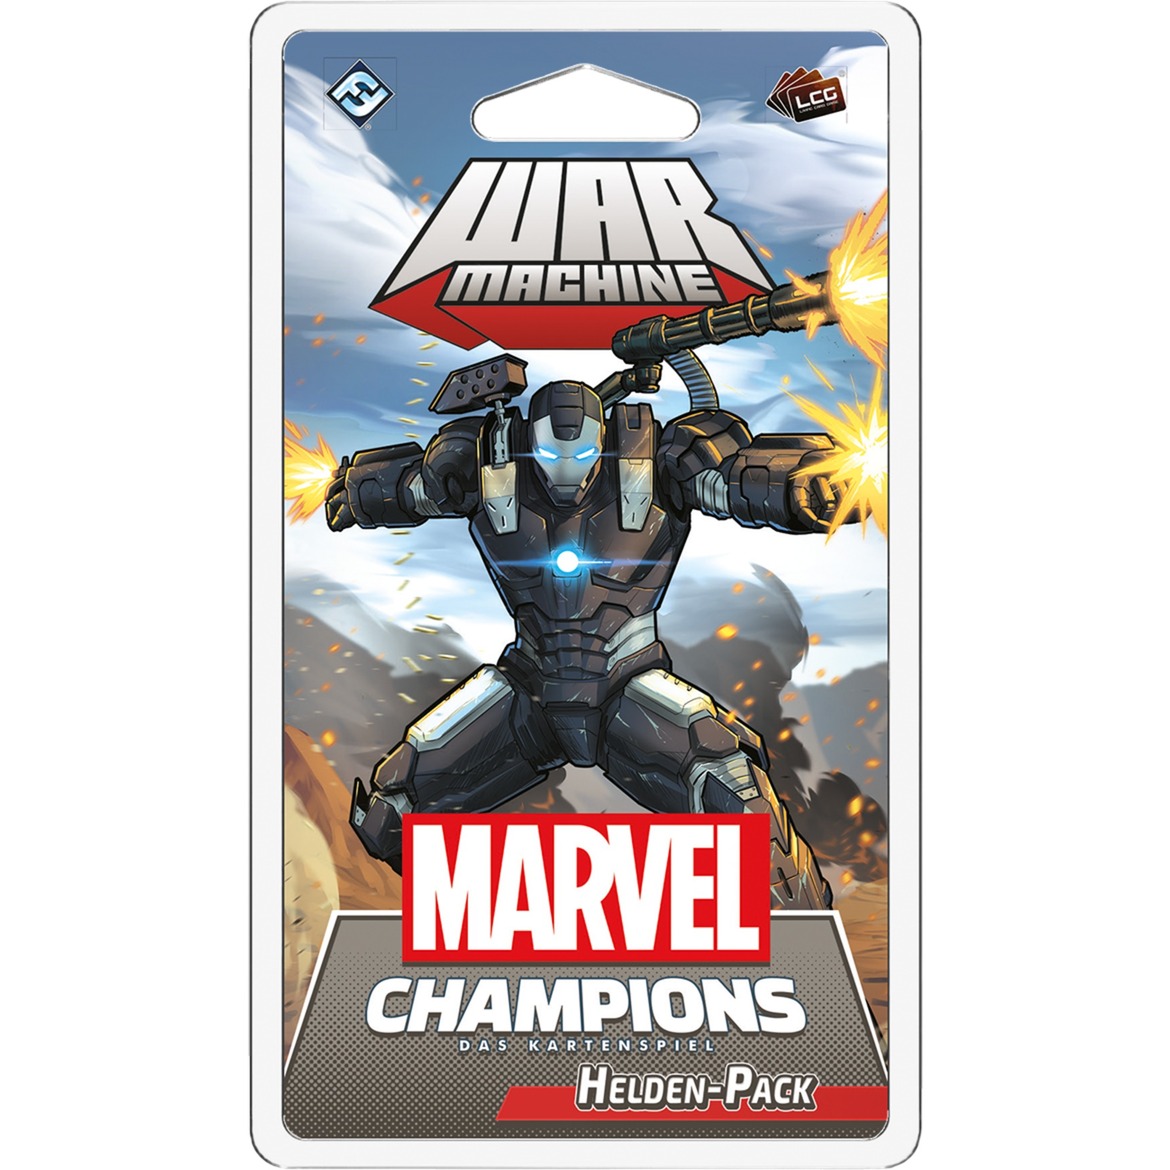 Image of Alternate - Marvel Champions: Das Kartenspiel - War Machine online einkaufen bei Alternate